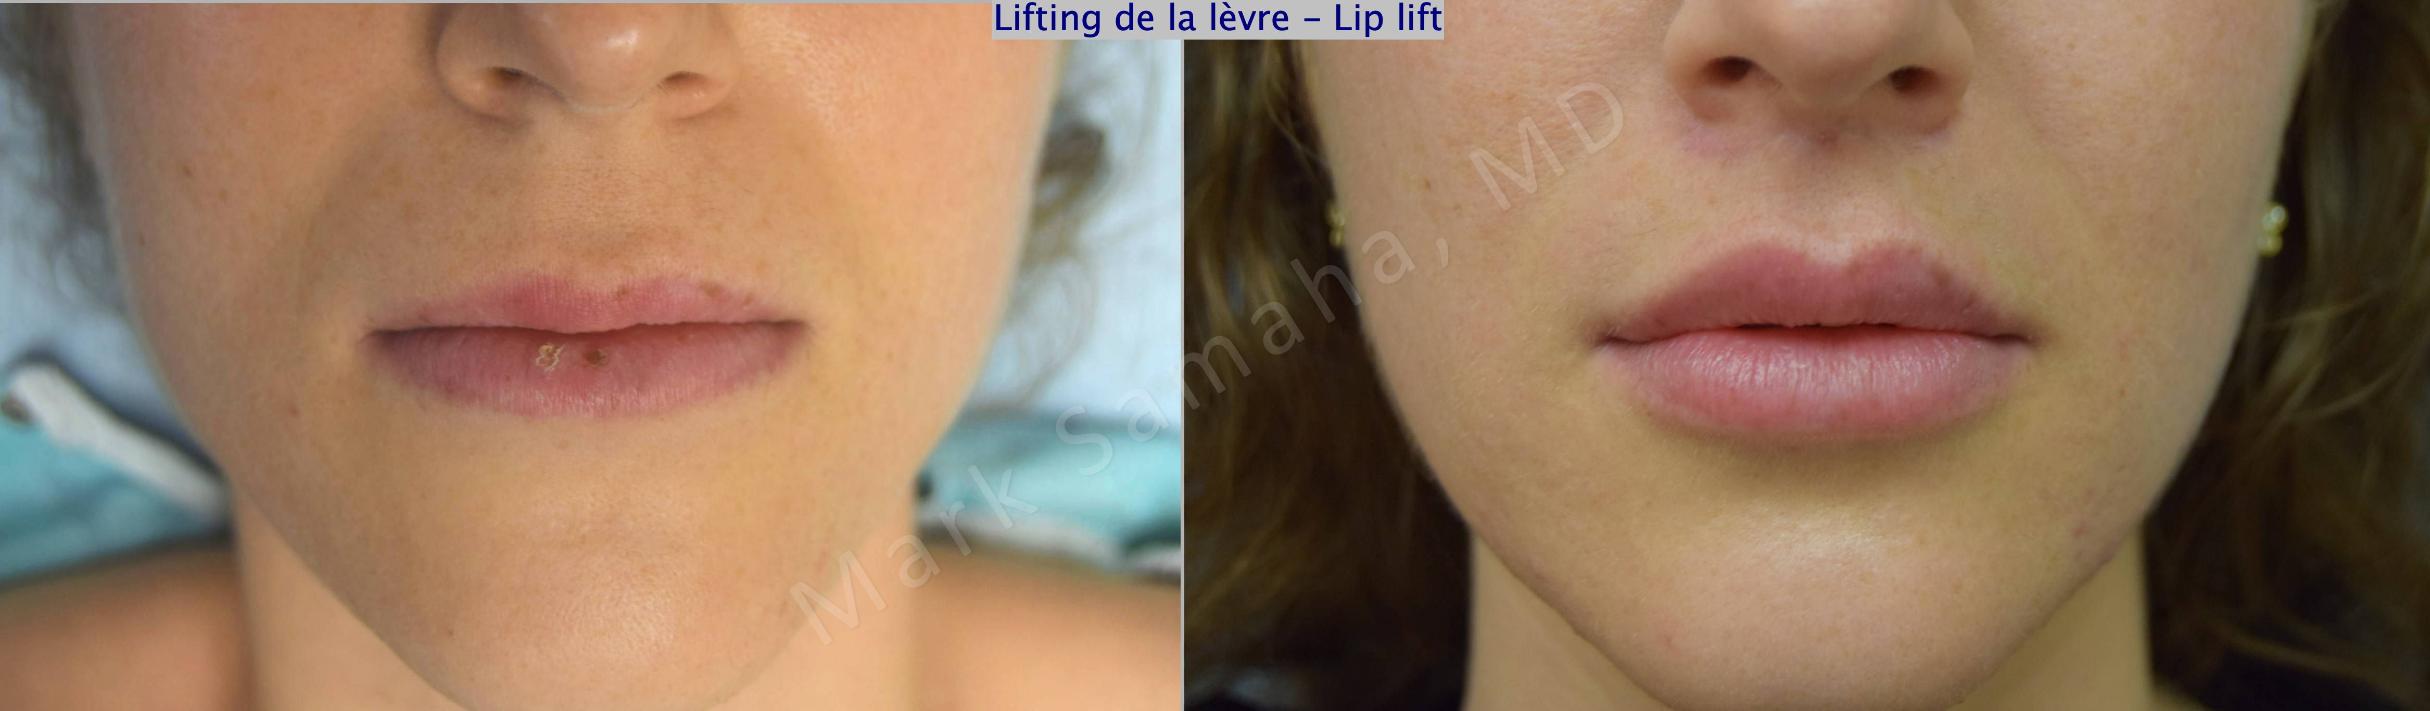 Before & After Lip Lift / Lifting de la lèvre supérieure Case 174 Front View in Mount Royal, QC